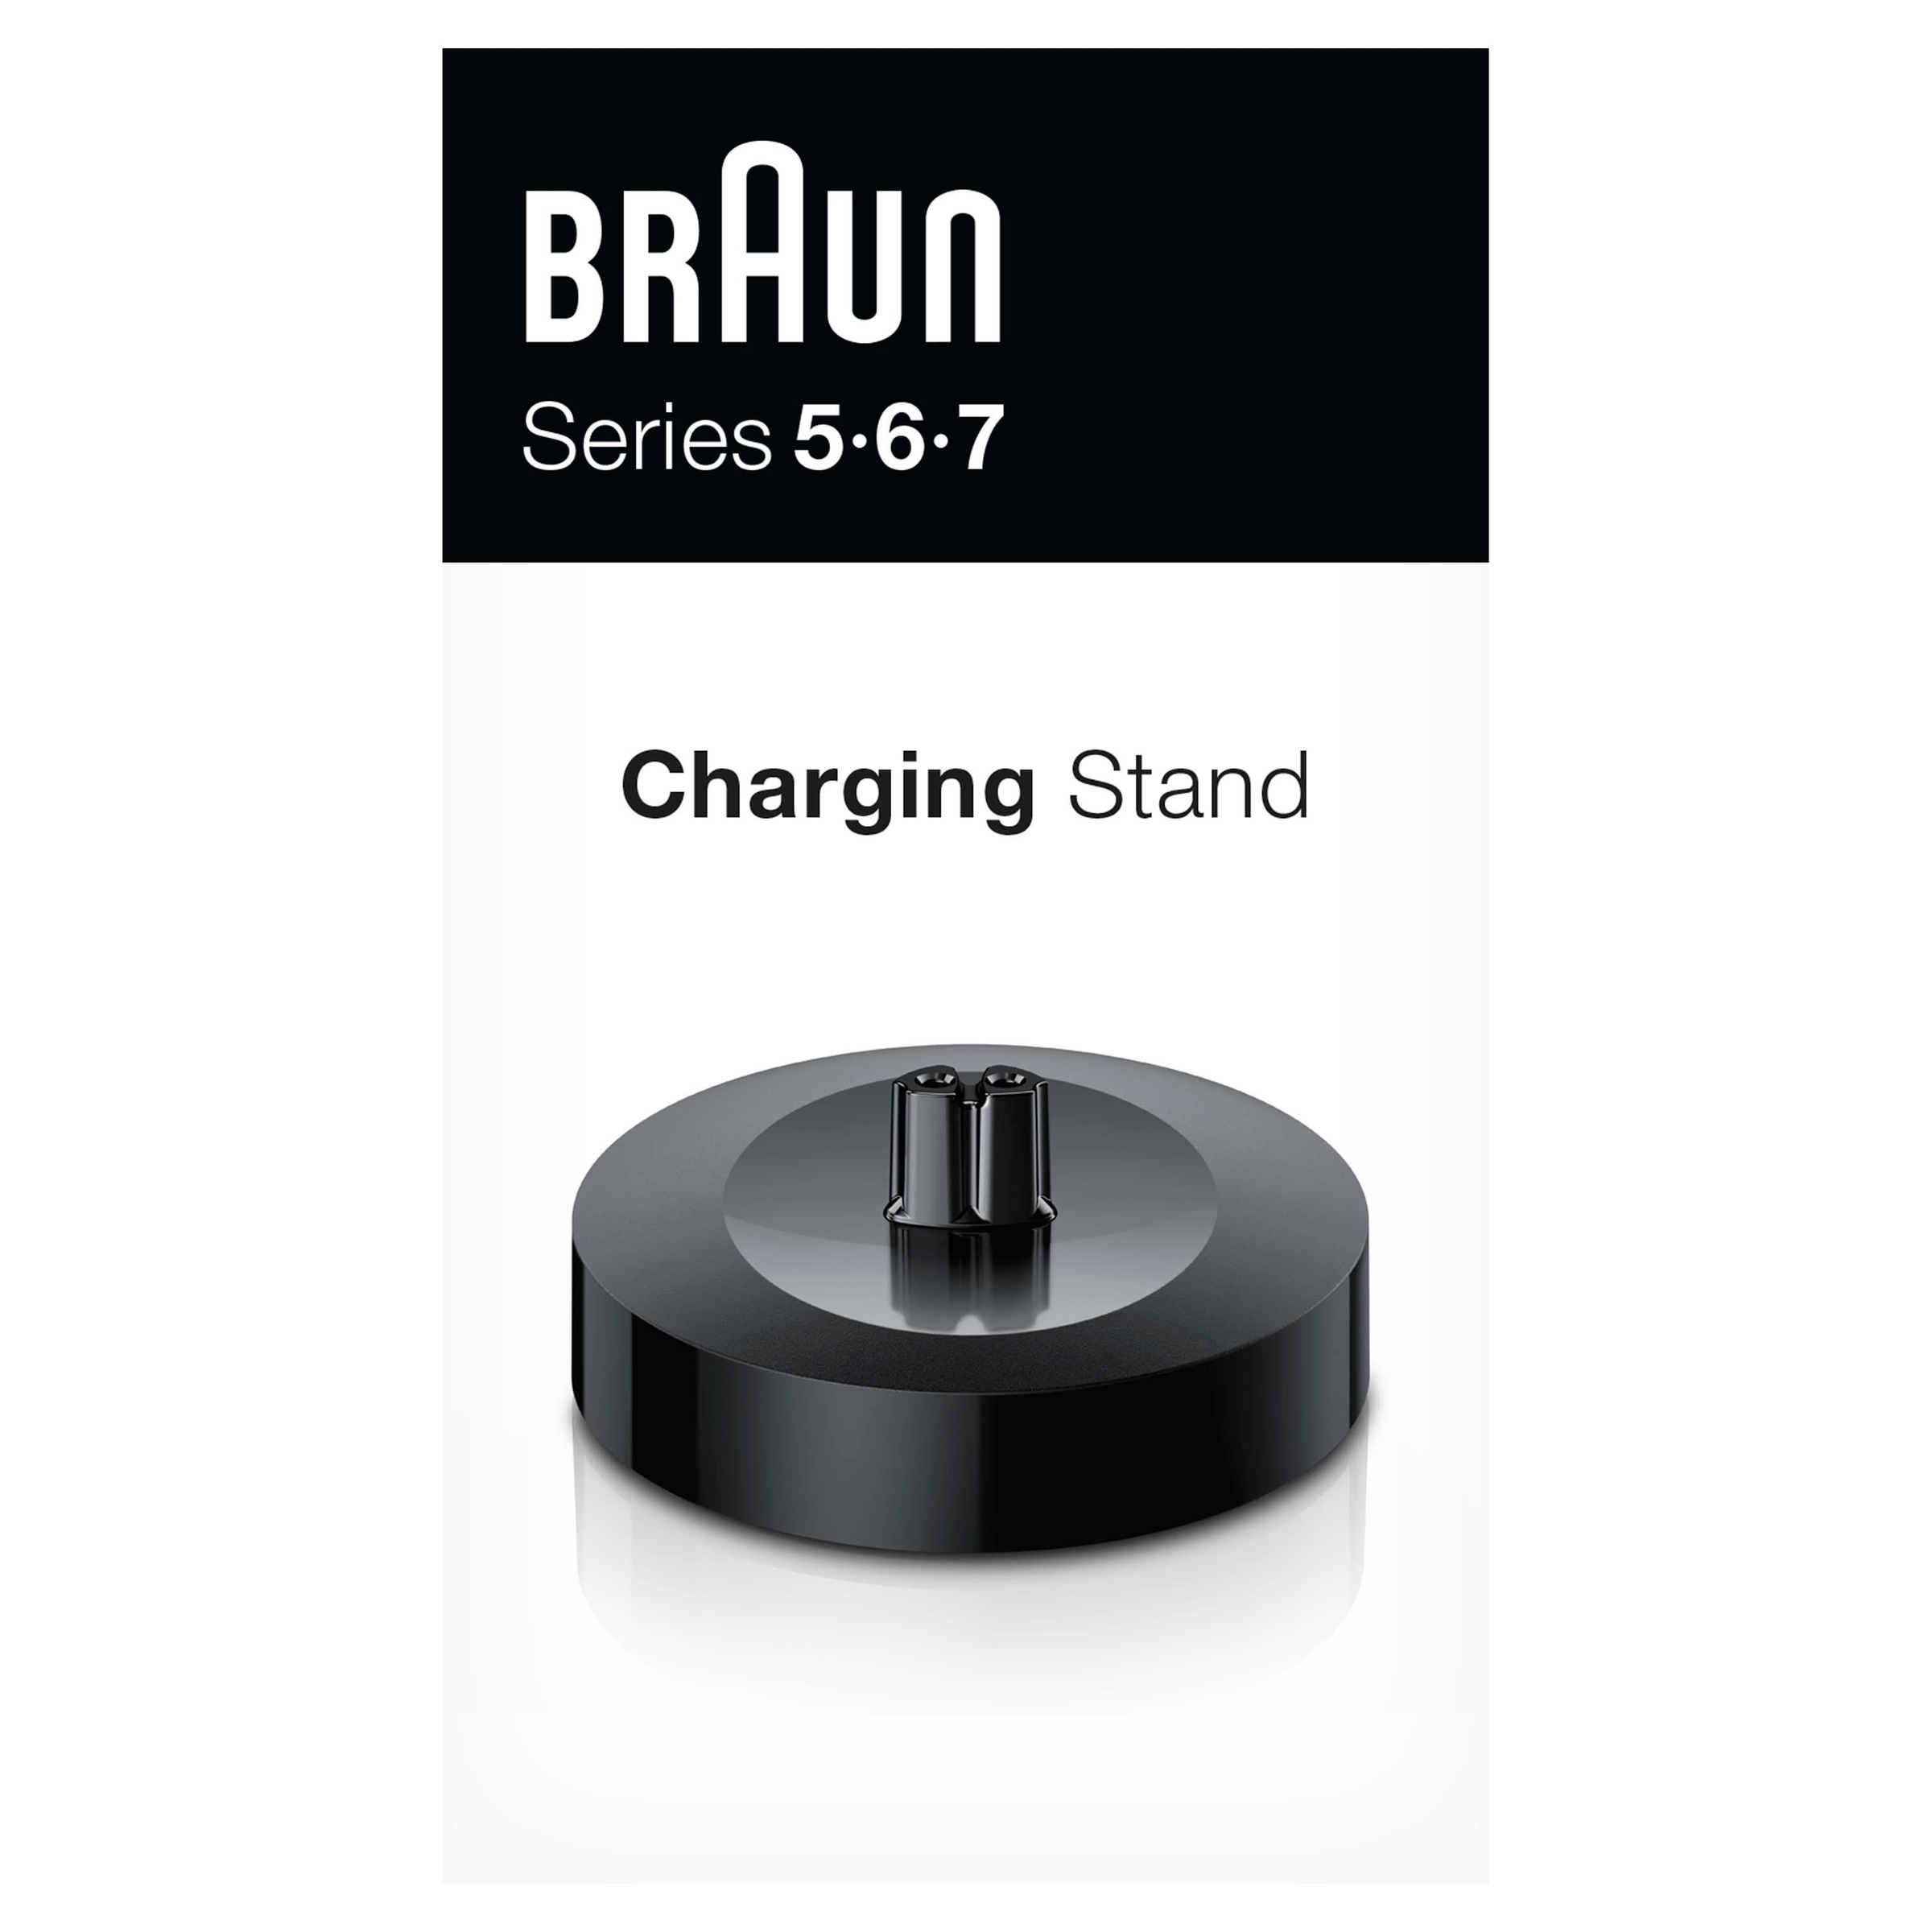 Braun Rasierer-Ladestation, für Series 5, 6 und 7 Rasierer Modelle ab 2020